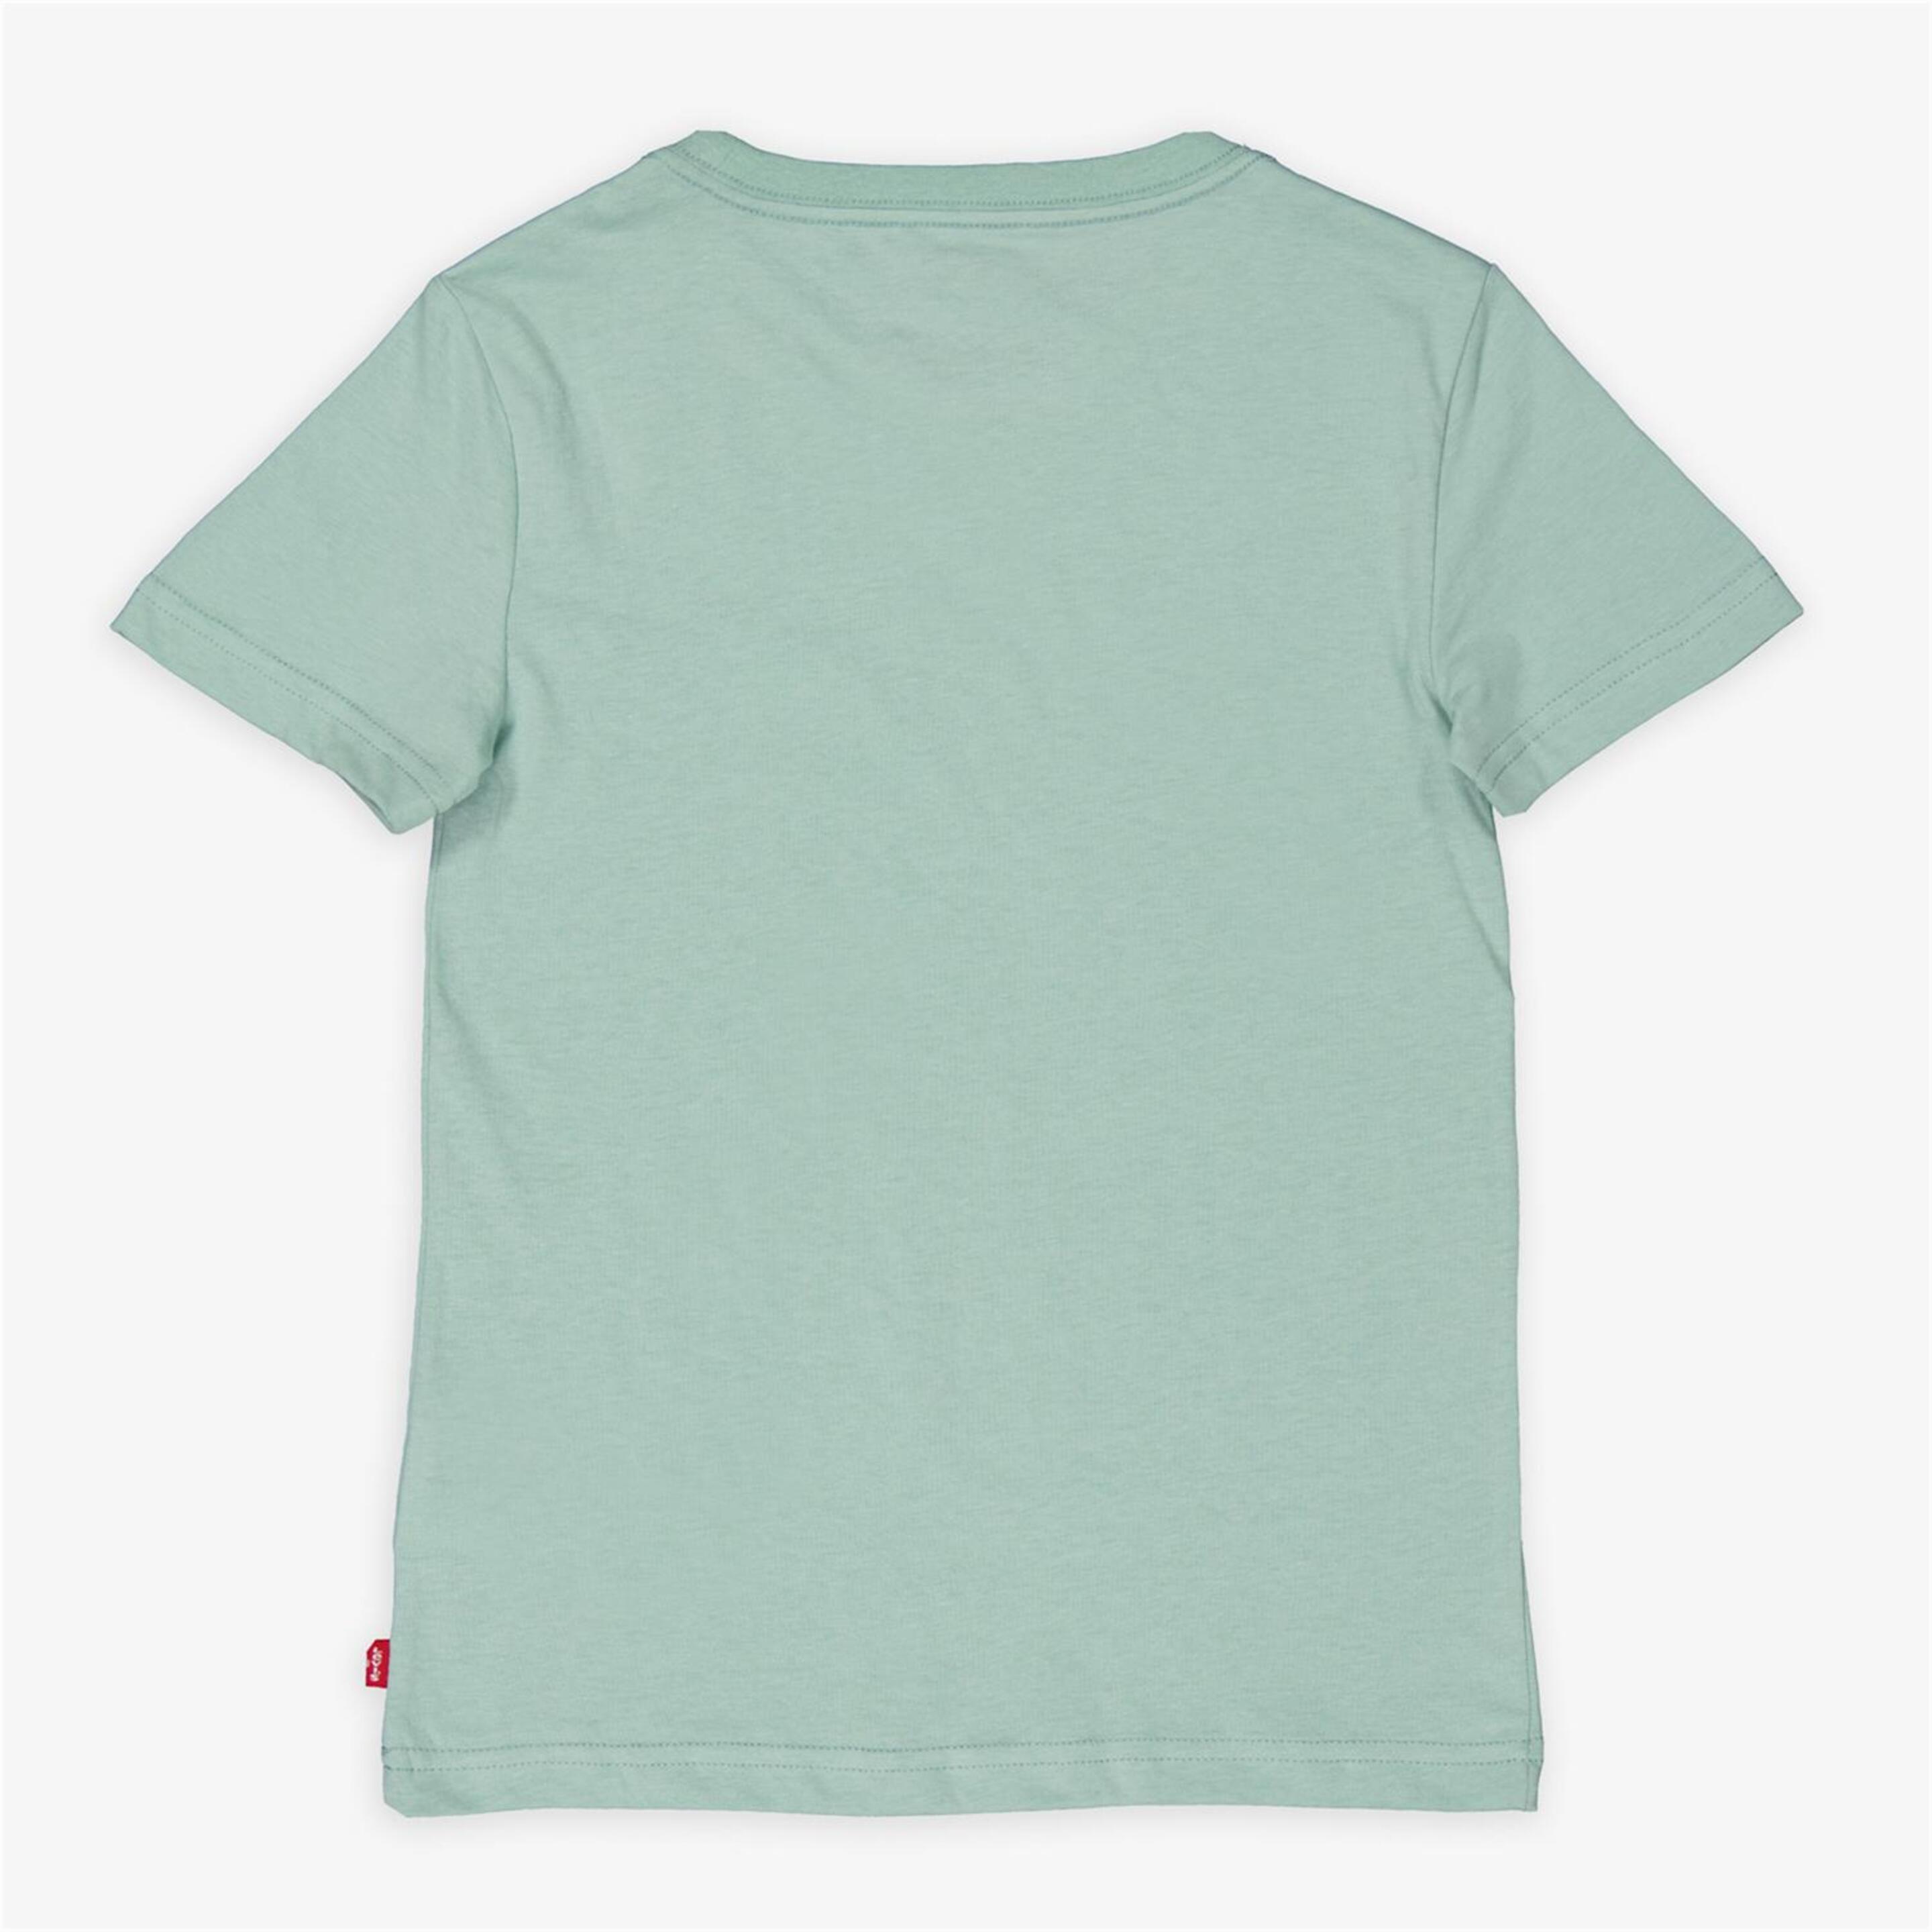 Camiseta Levi's - Turquesa - Camiseta Niño